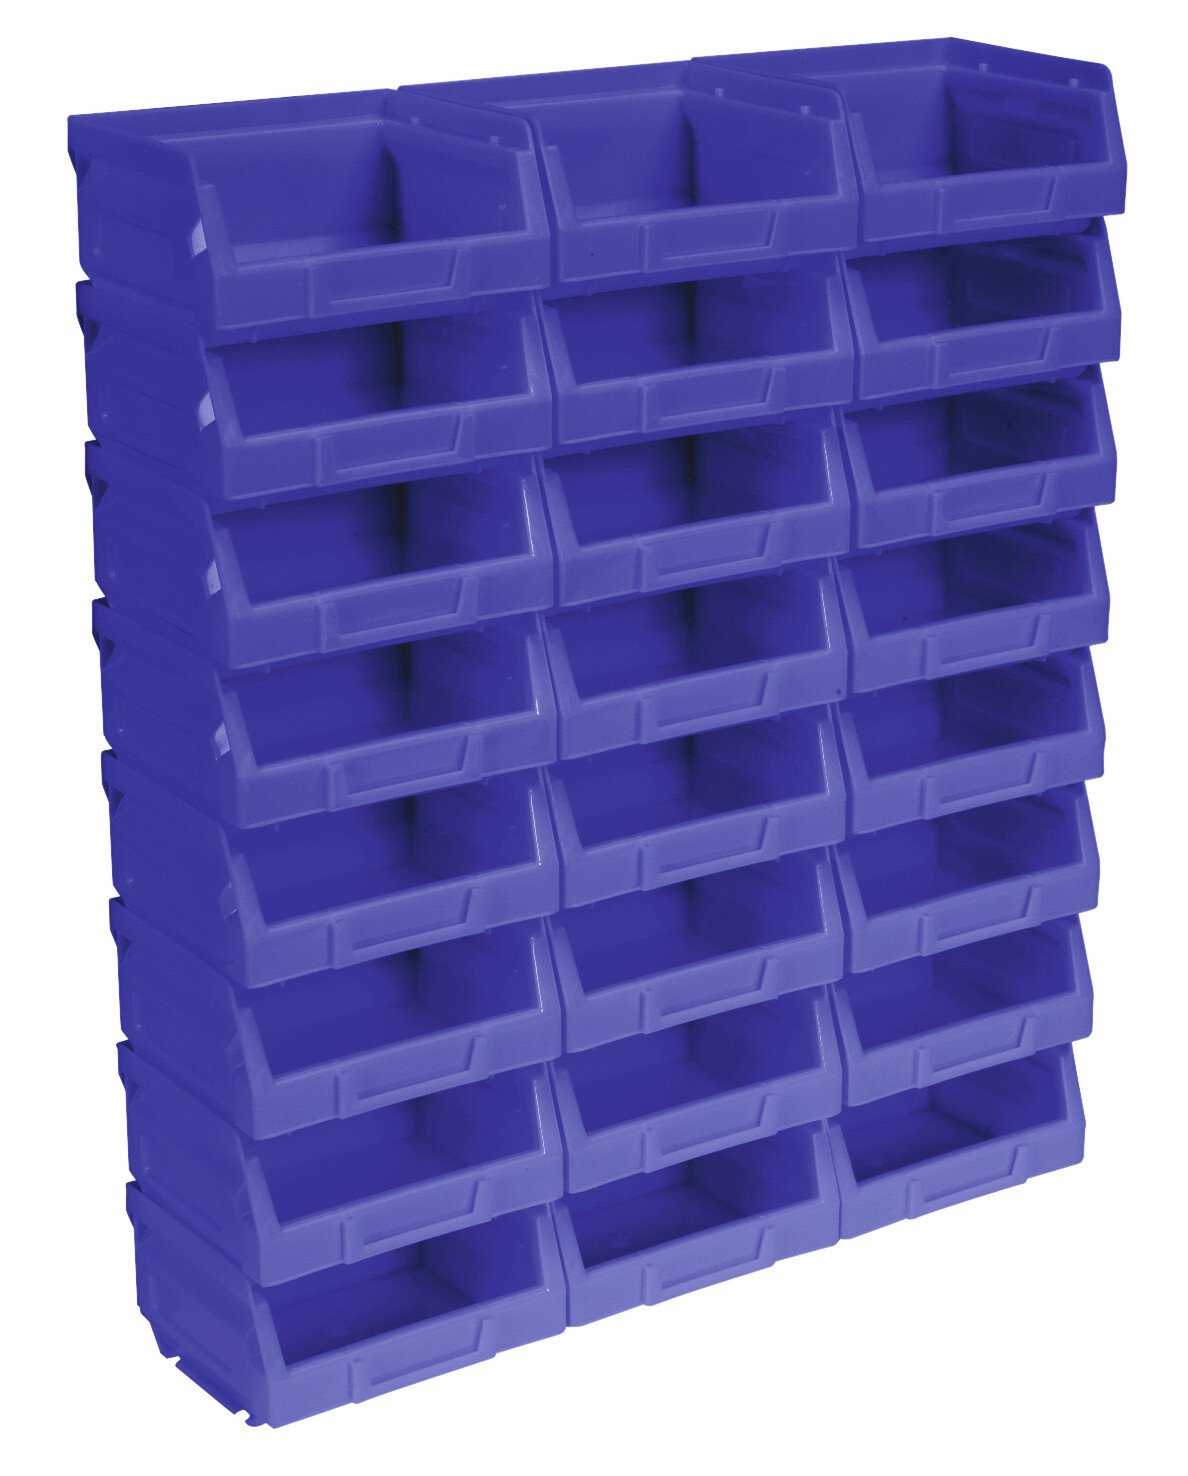 Sealey TPS124B Plastic Storage Bin 103 x 85 x 53mm - Blue Pack of 24